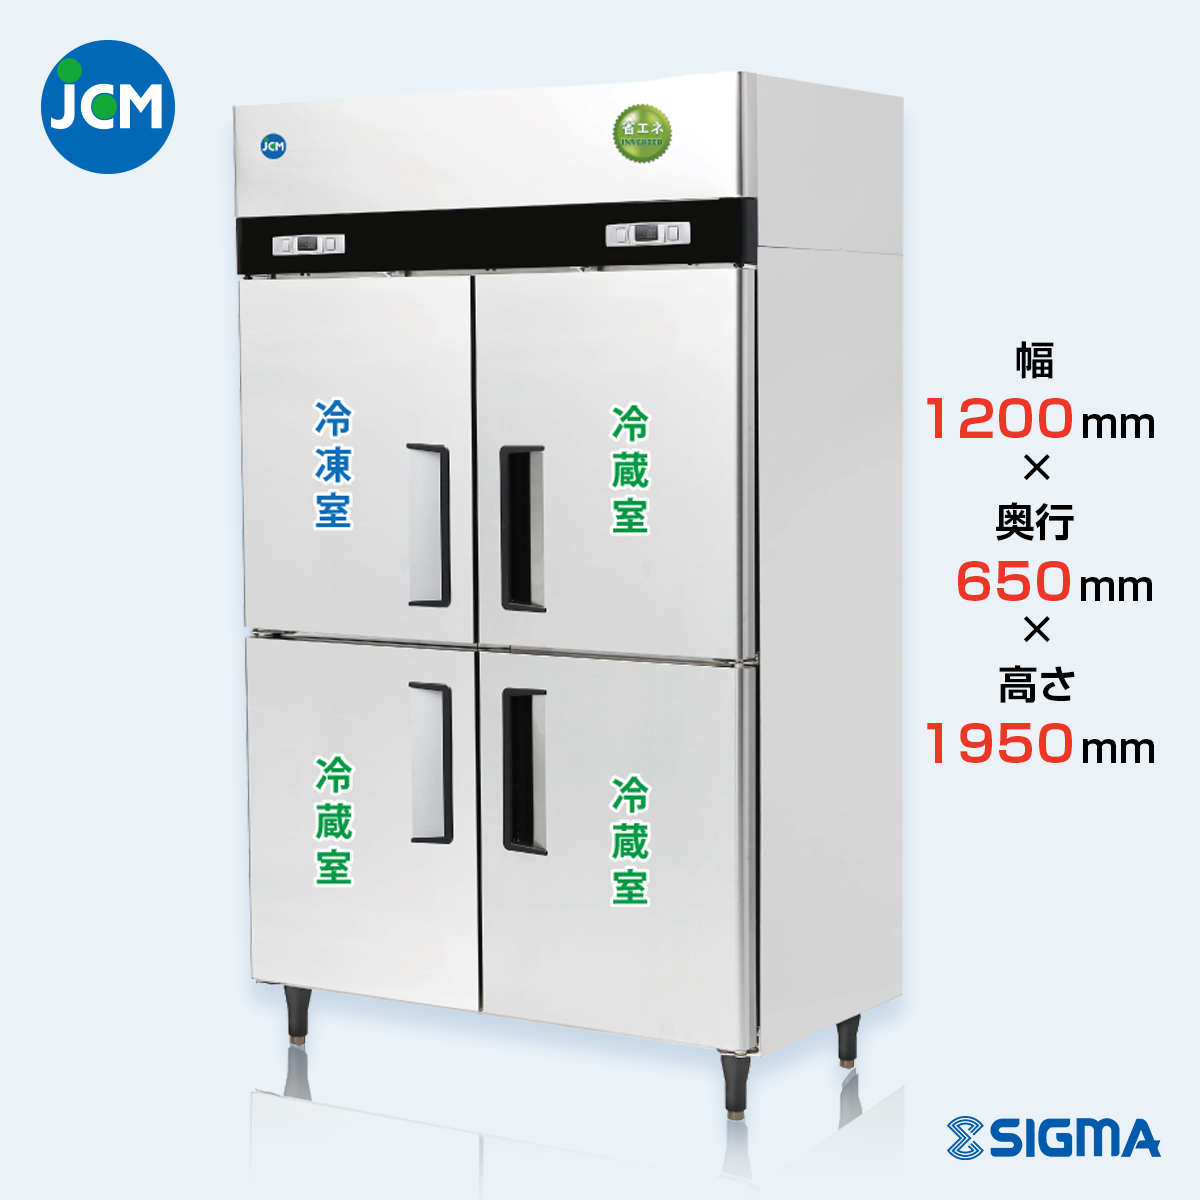 JCMR-1265F1-IN 業務用 縦型冷凍冷蔵庫（冷凍1 冷蔵3）／幅1200×奥行650×高さ1950mm